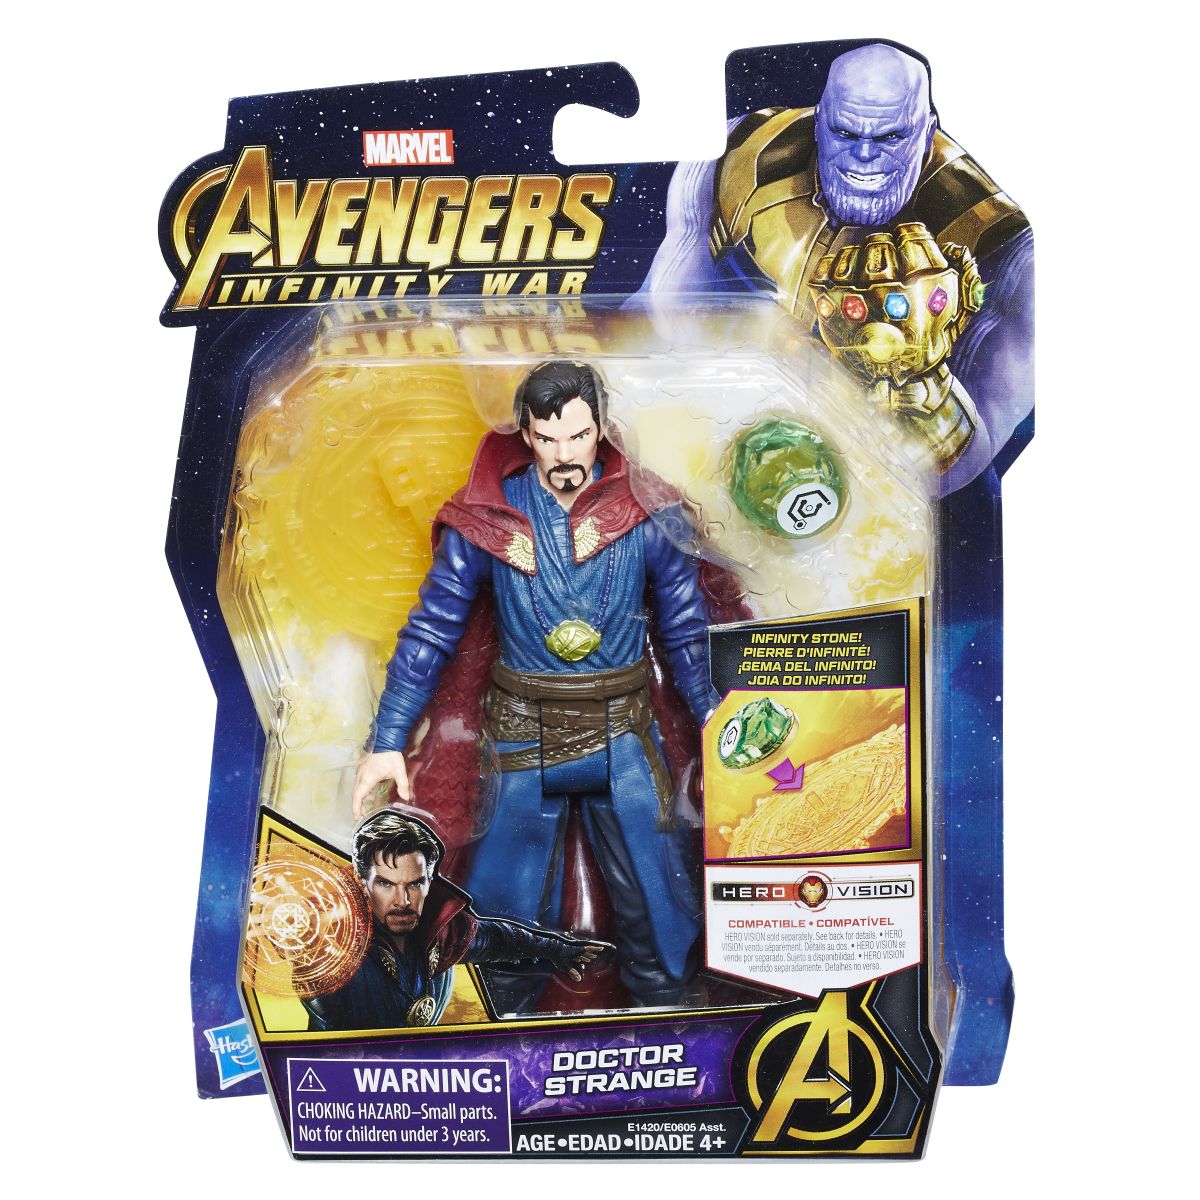 Marvel Avengers Infinity War 6 Inch Figure Assortment Doctor Strange In Pkg